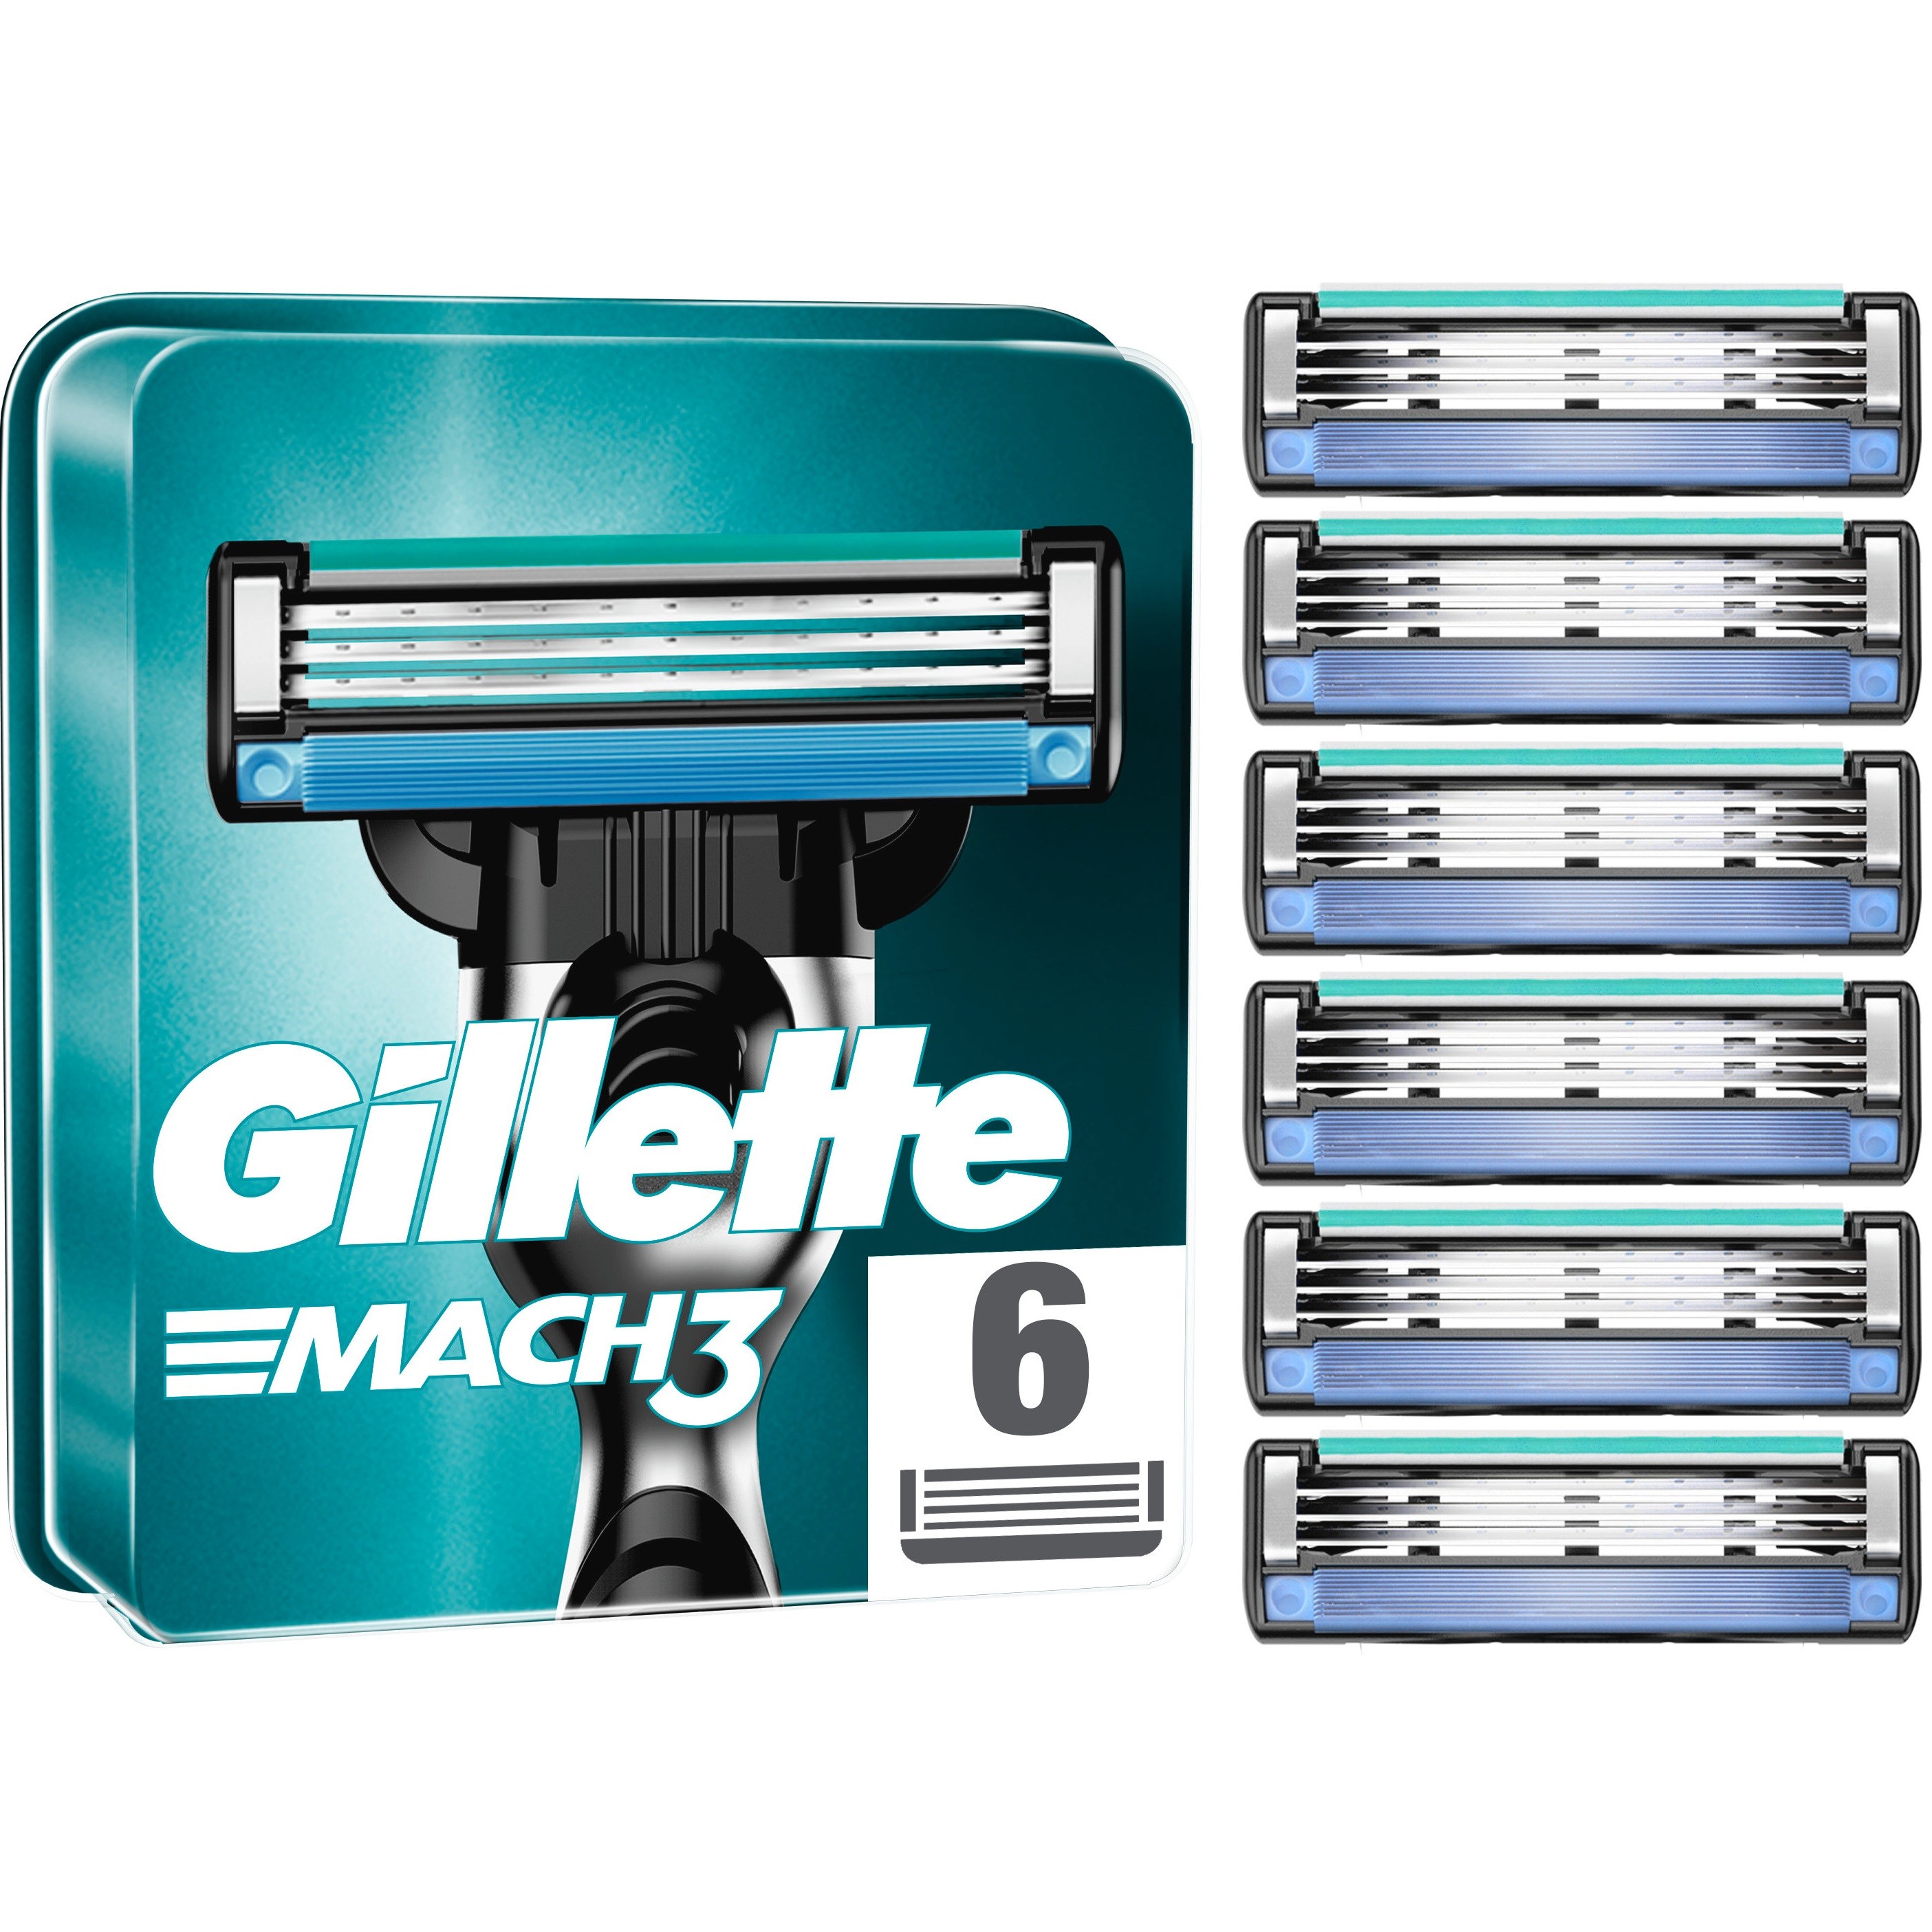 Gillette Mach3 Mens Razor Blade Refills 6 st